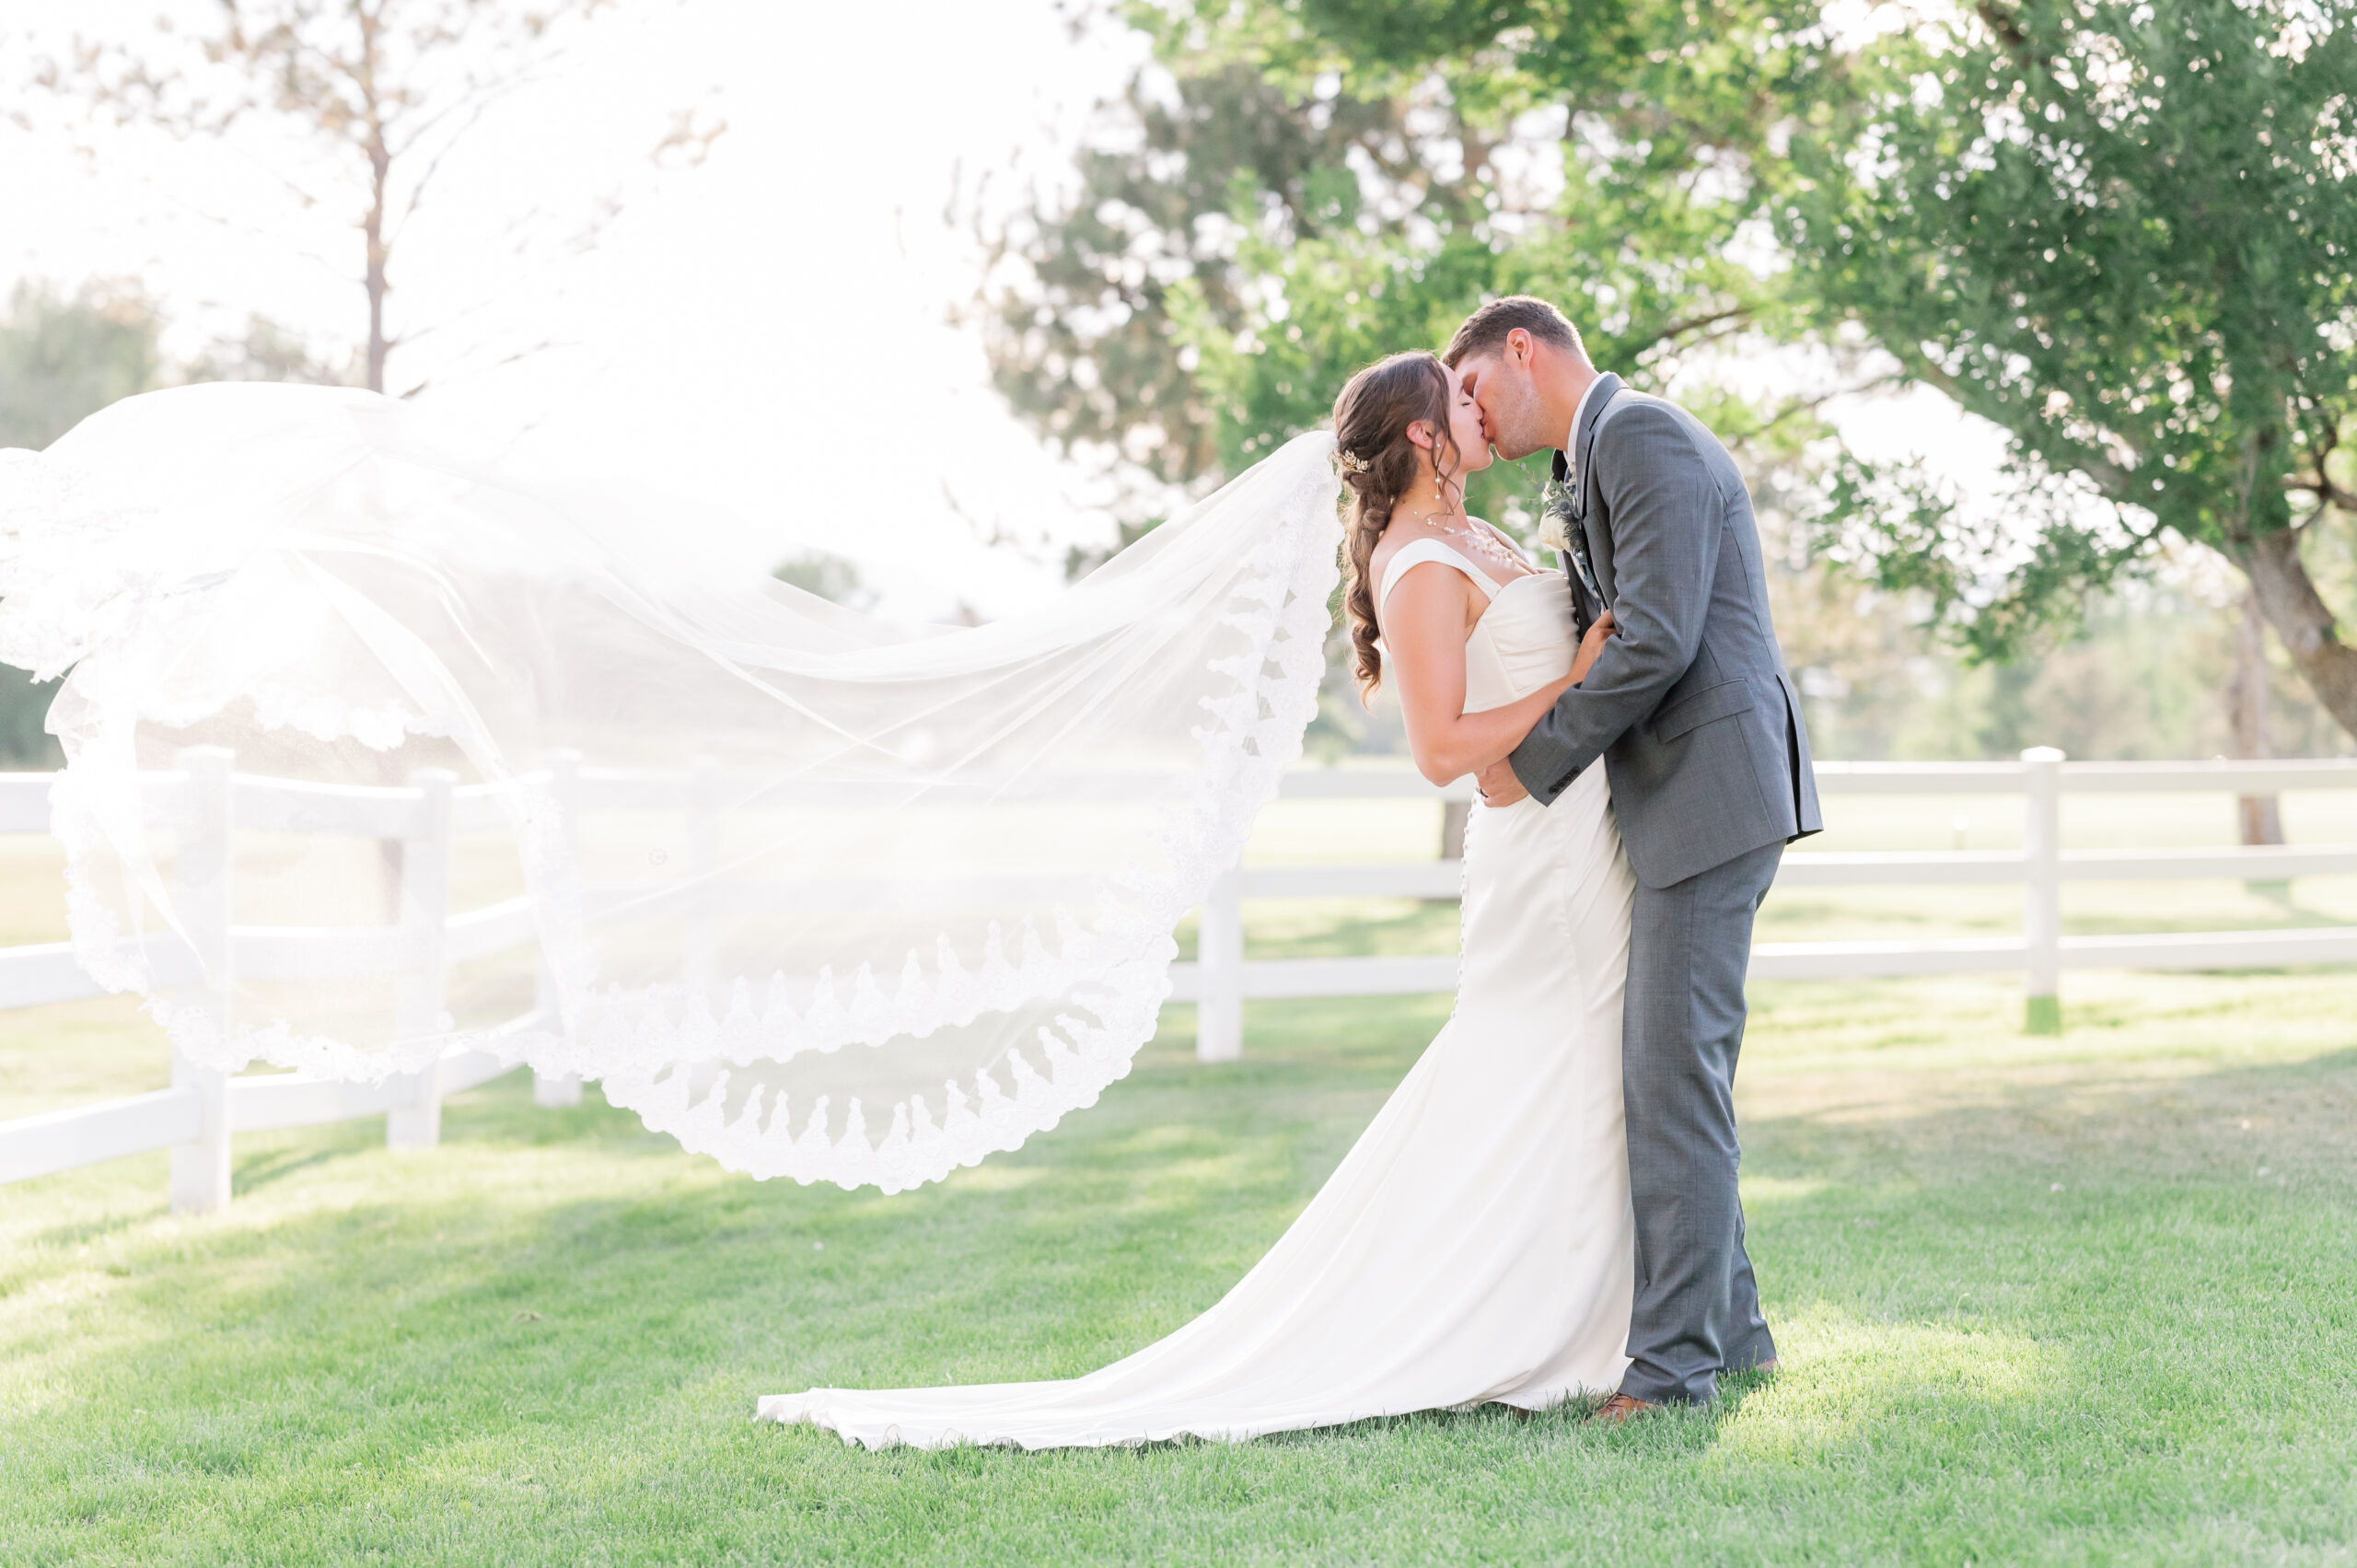 Megan + Jake Wedding - Britni Girard Photography - Colorado Wedding Photography and Videography - Timeless Documentary Wedding Photography and films